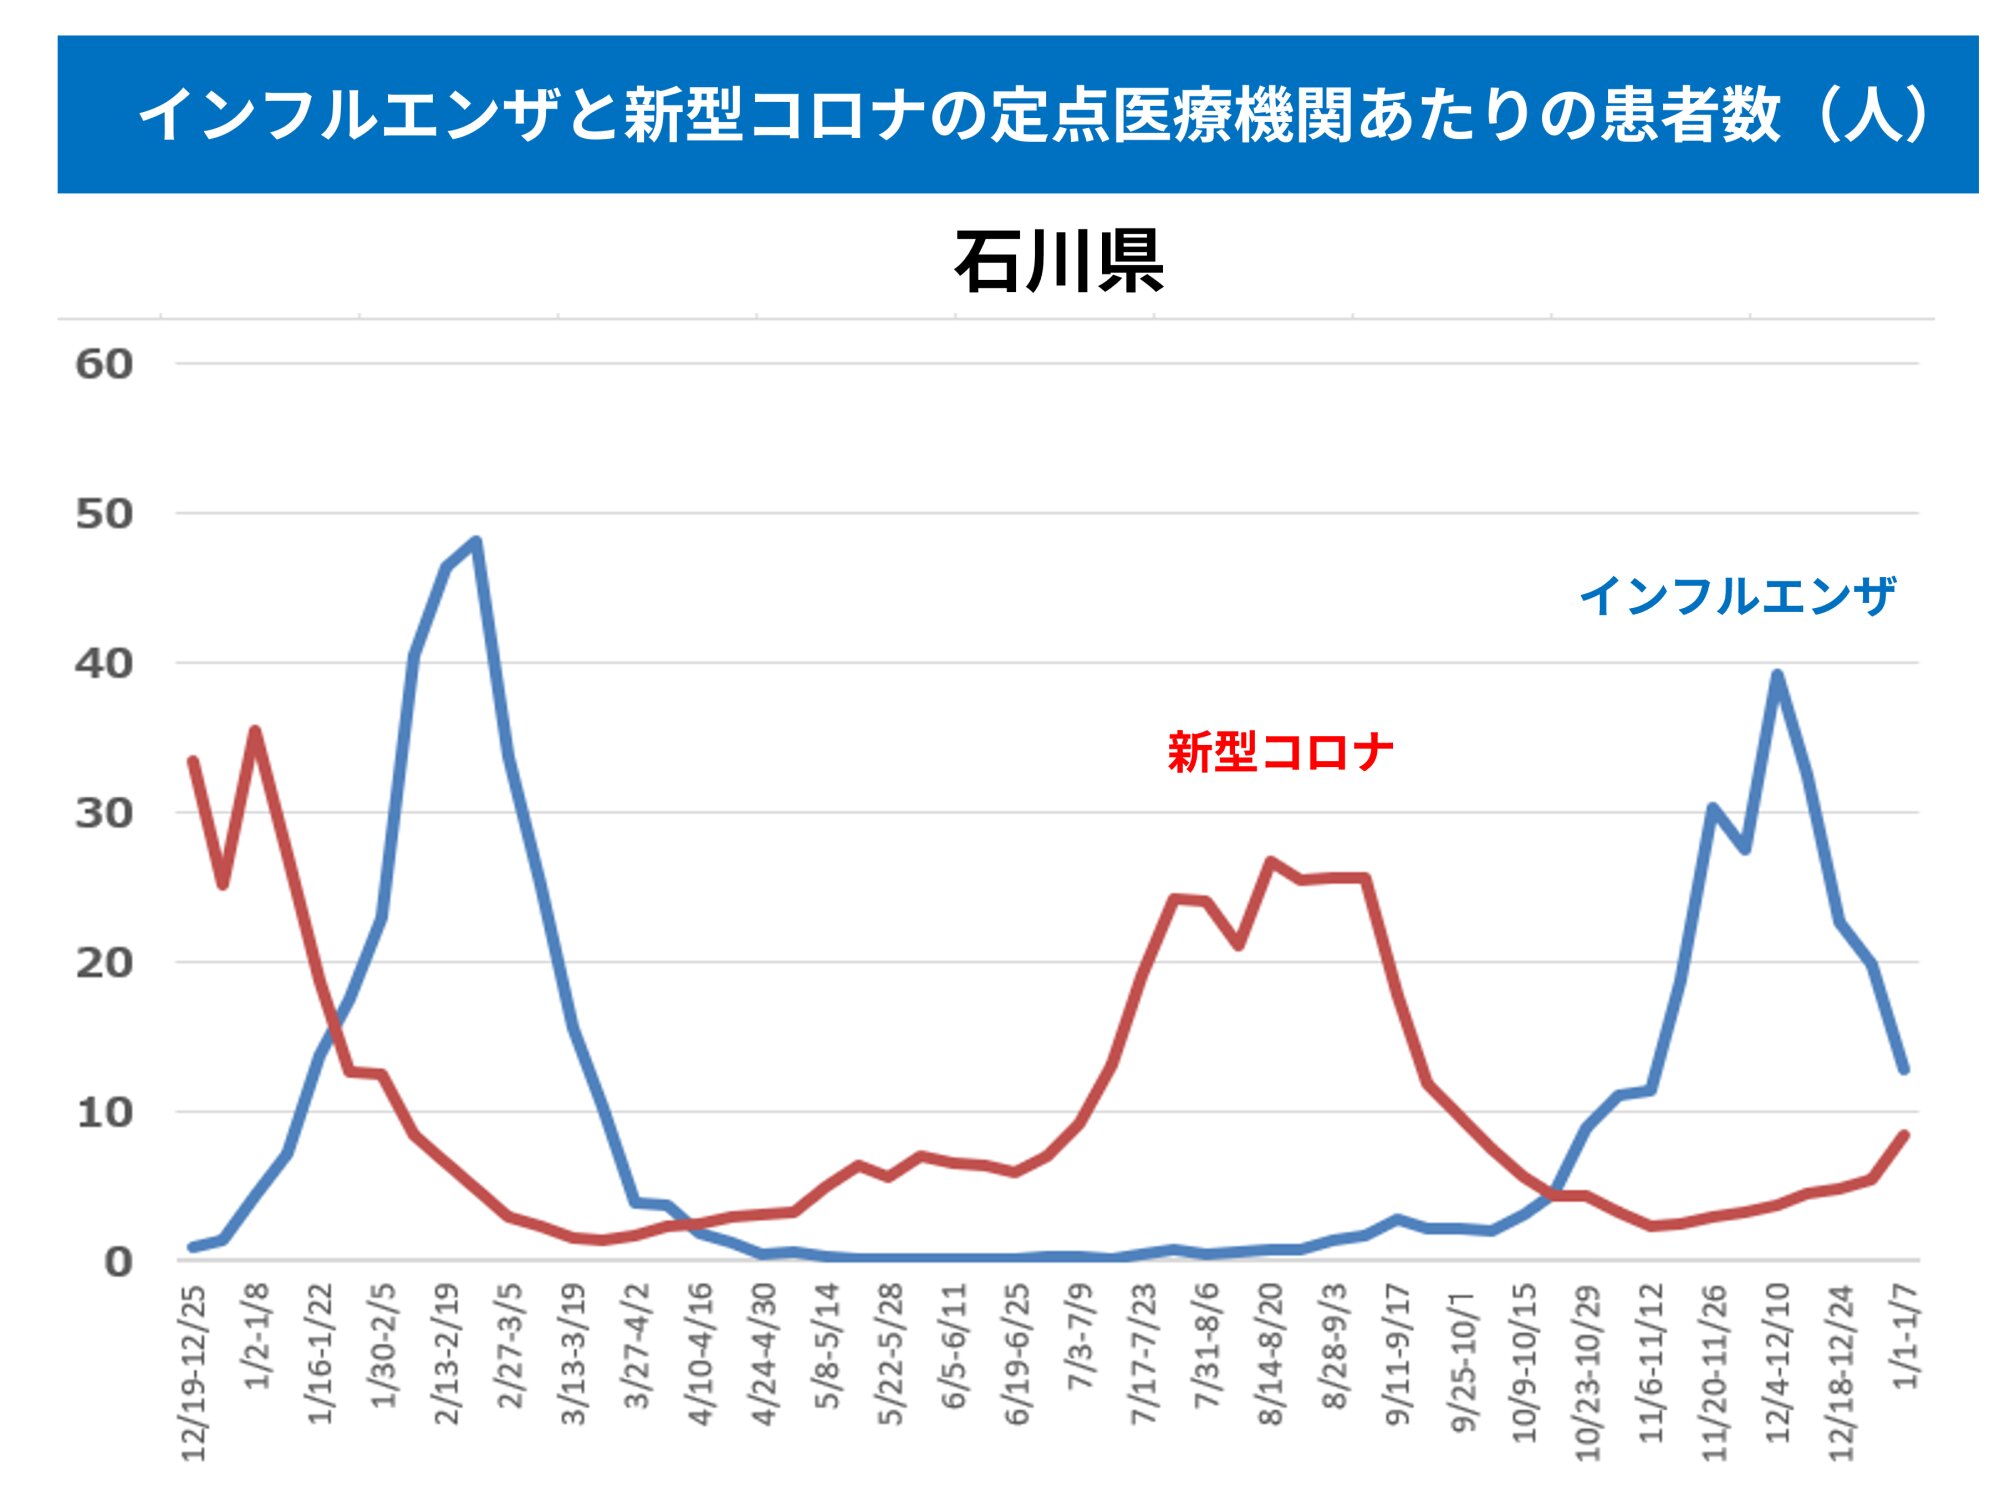 図４．石川県における新型コロナおよびインフルエンザの定点医療機関あたり感染者数（参考資料１、２より筆者作成）